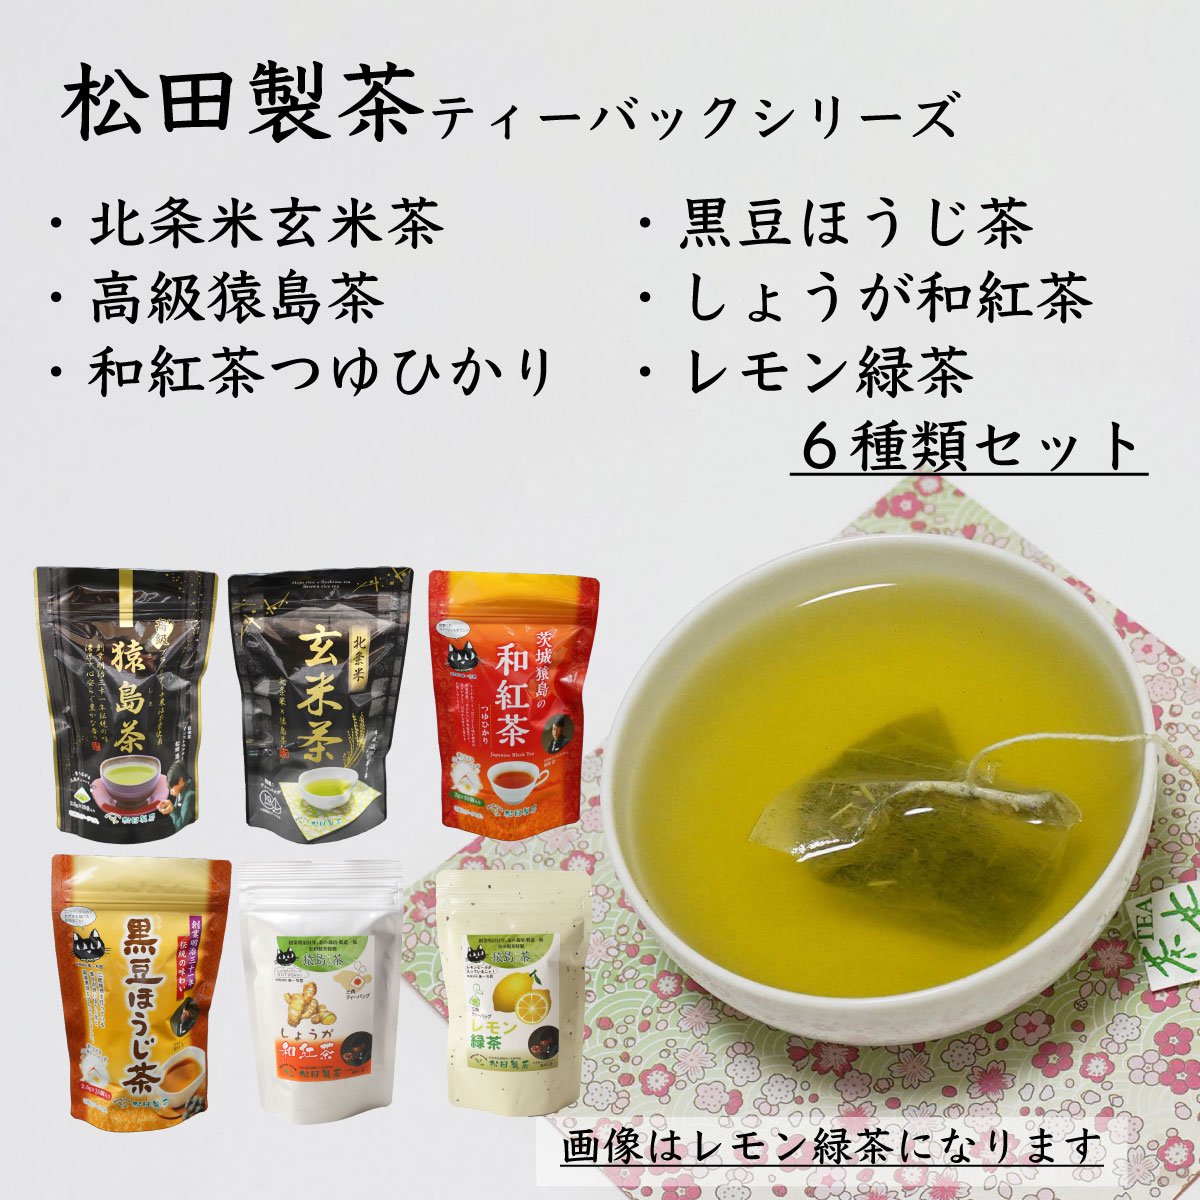 3000円 激安挑戦中 猿島茶の濃いお茶のアイス8個セット